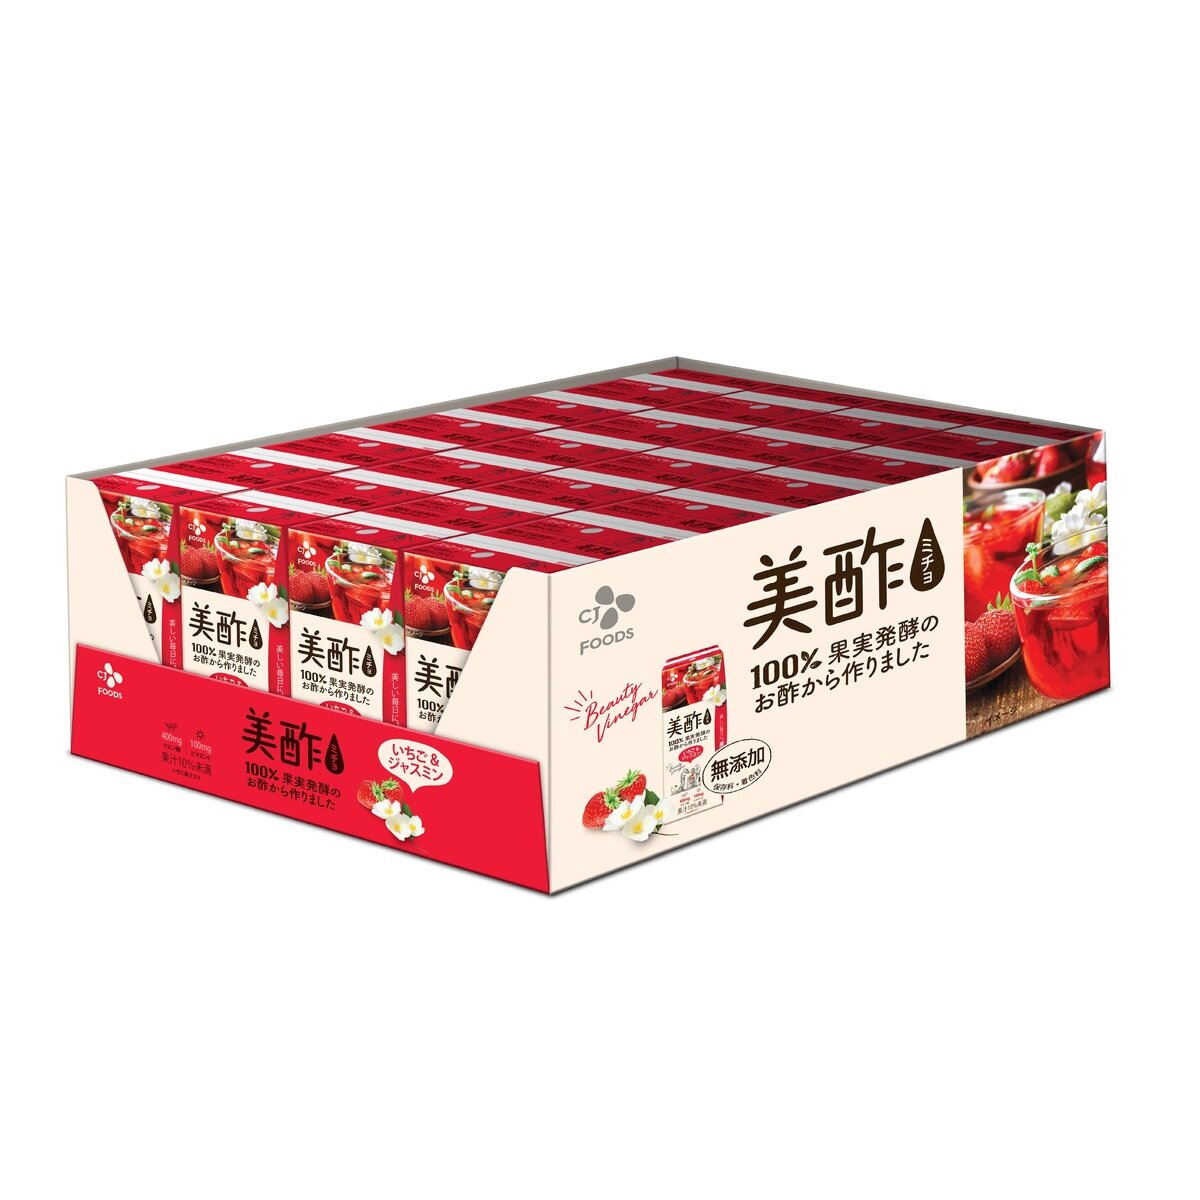 美酢 (ミチョ) イチゴ & ジャスミン 24パック | Costco Japan